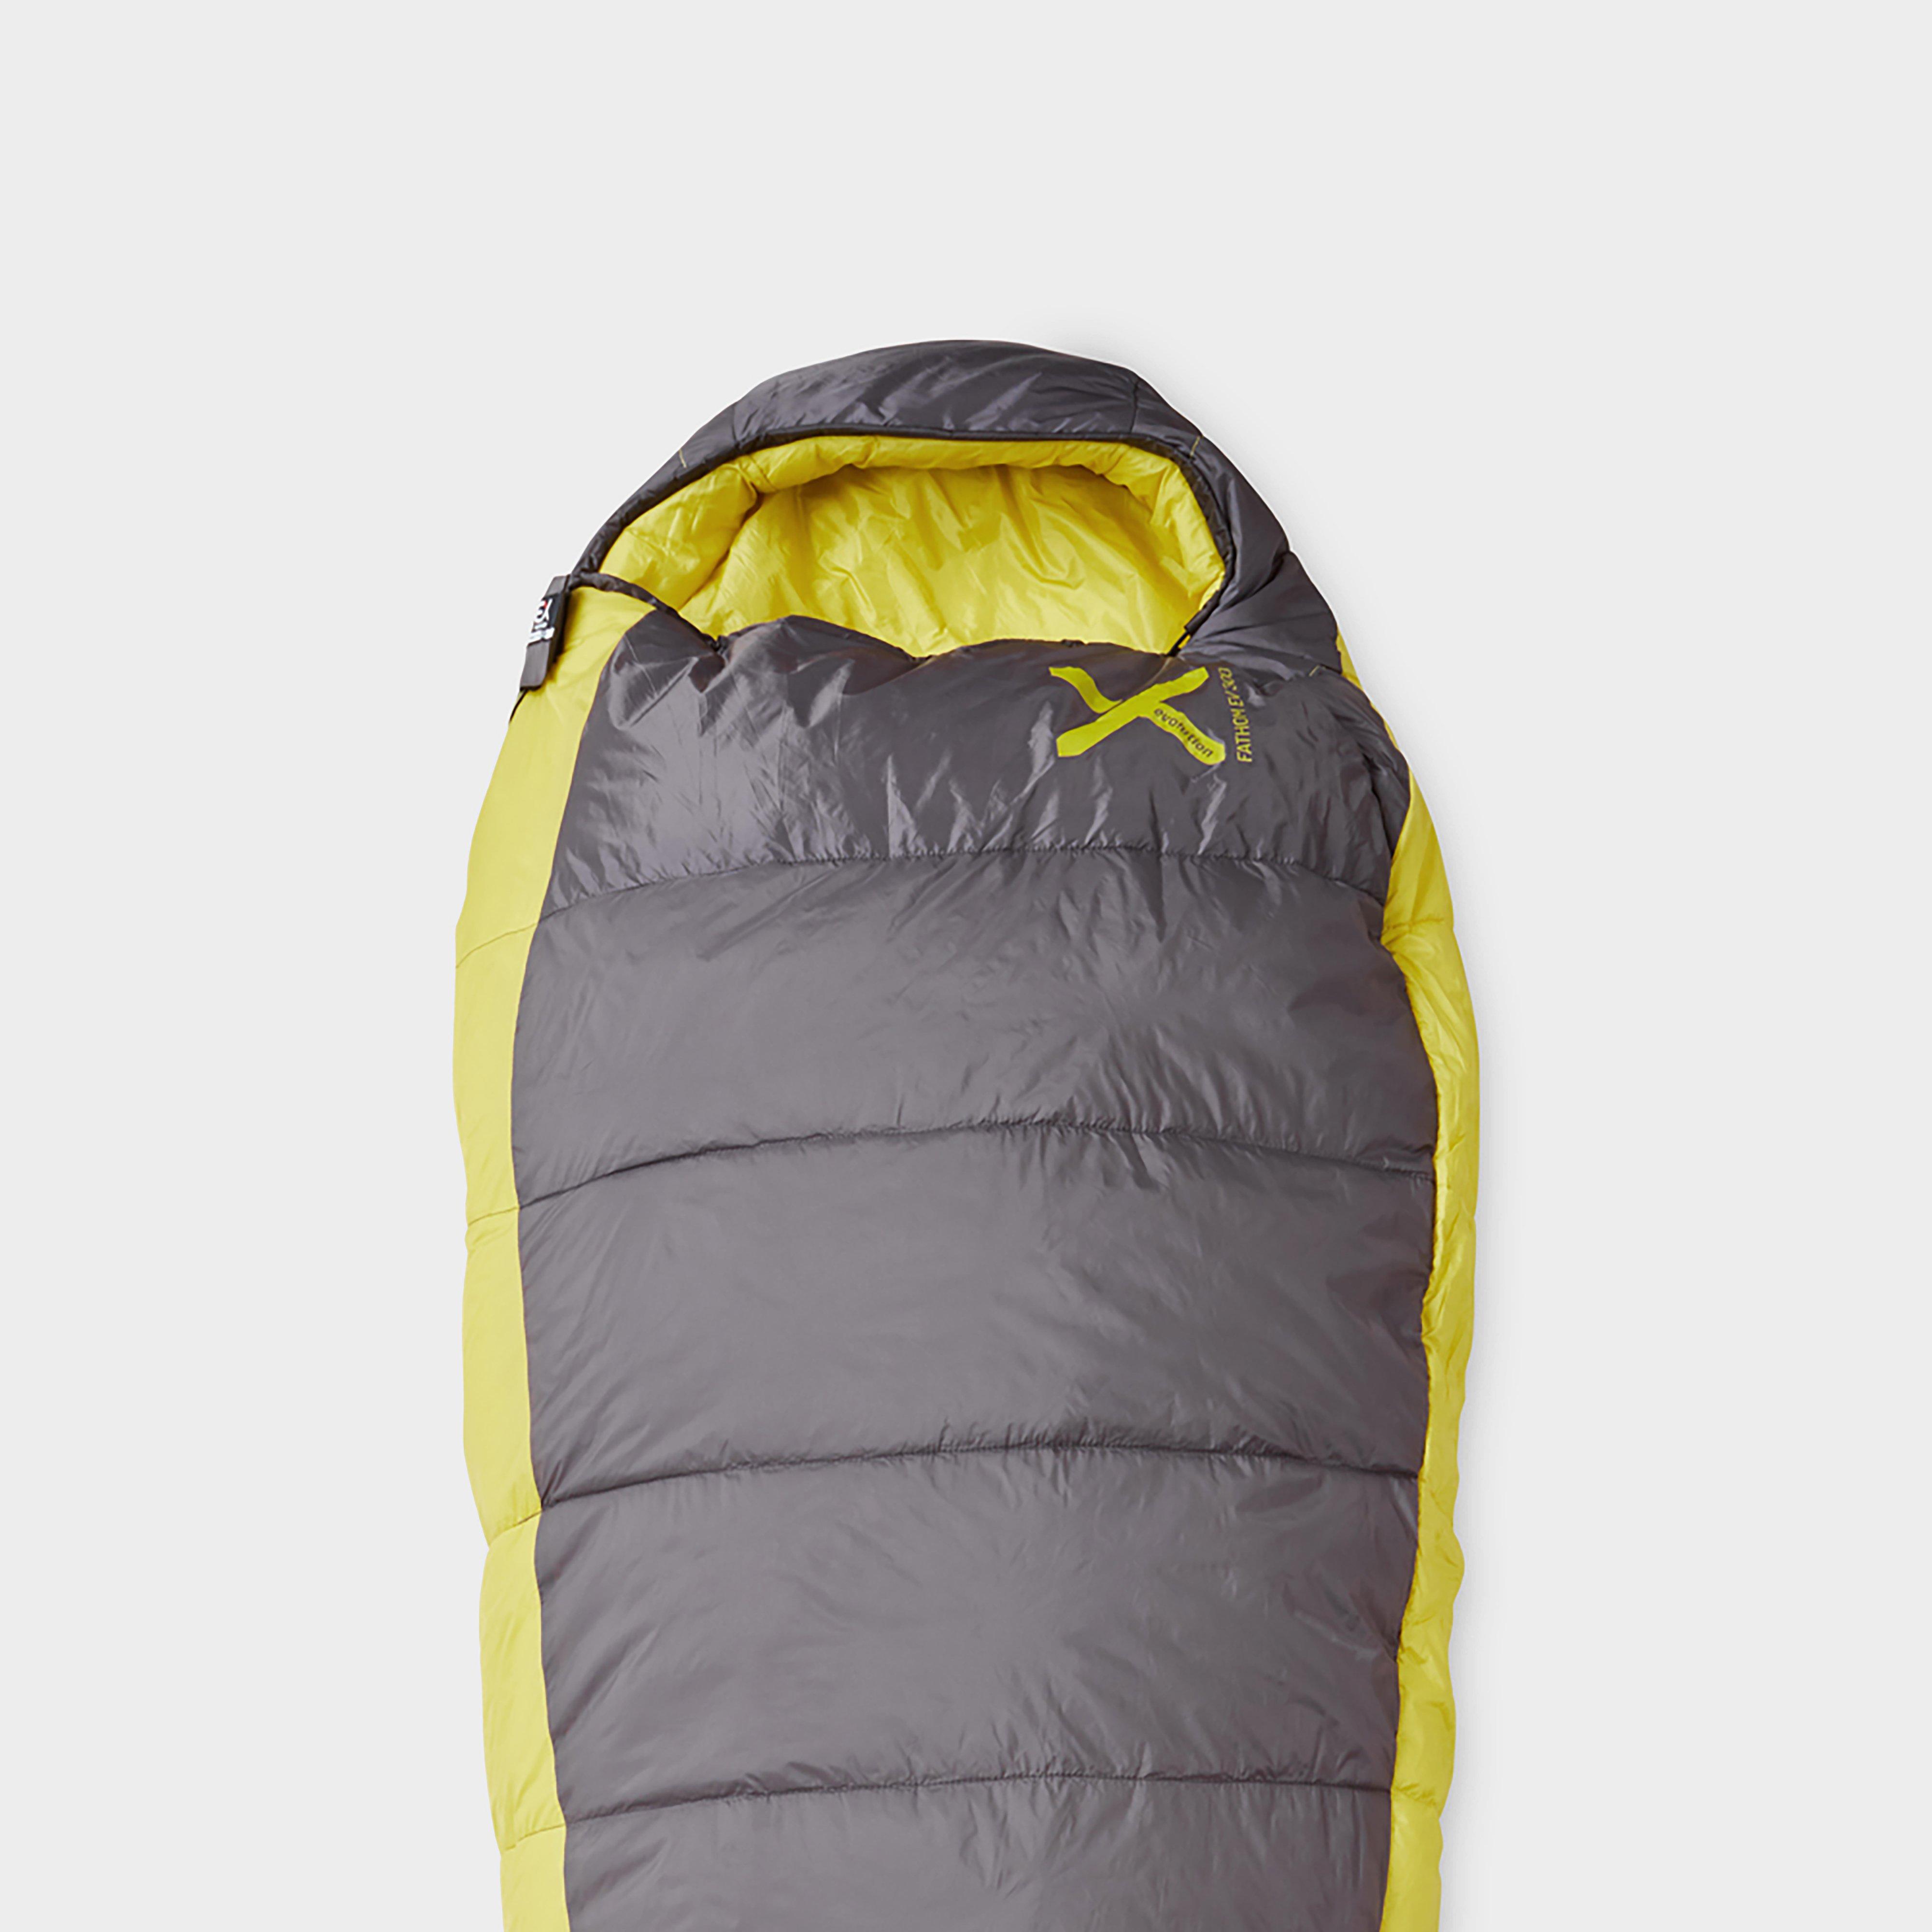 Oex Fathom Ev 300 Sleeping Bag - Yellow/black  Yellow/black